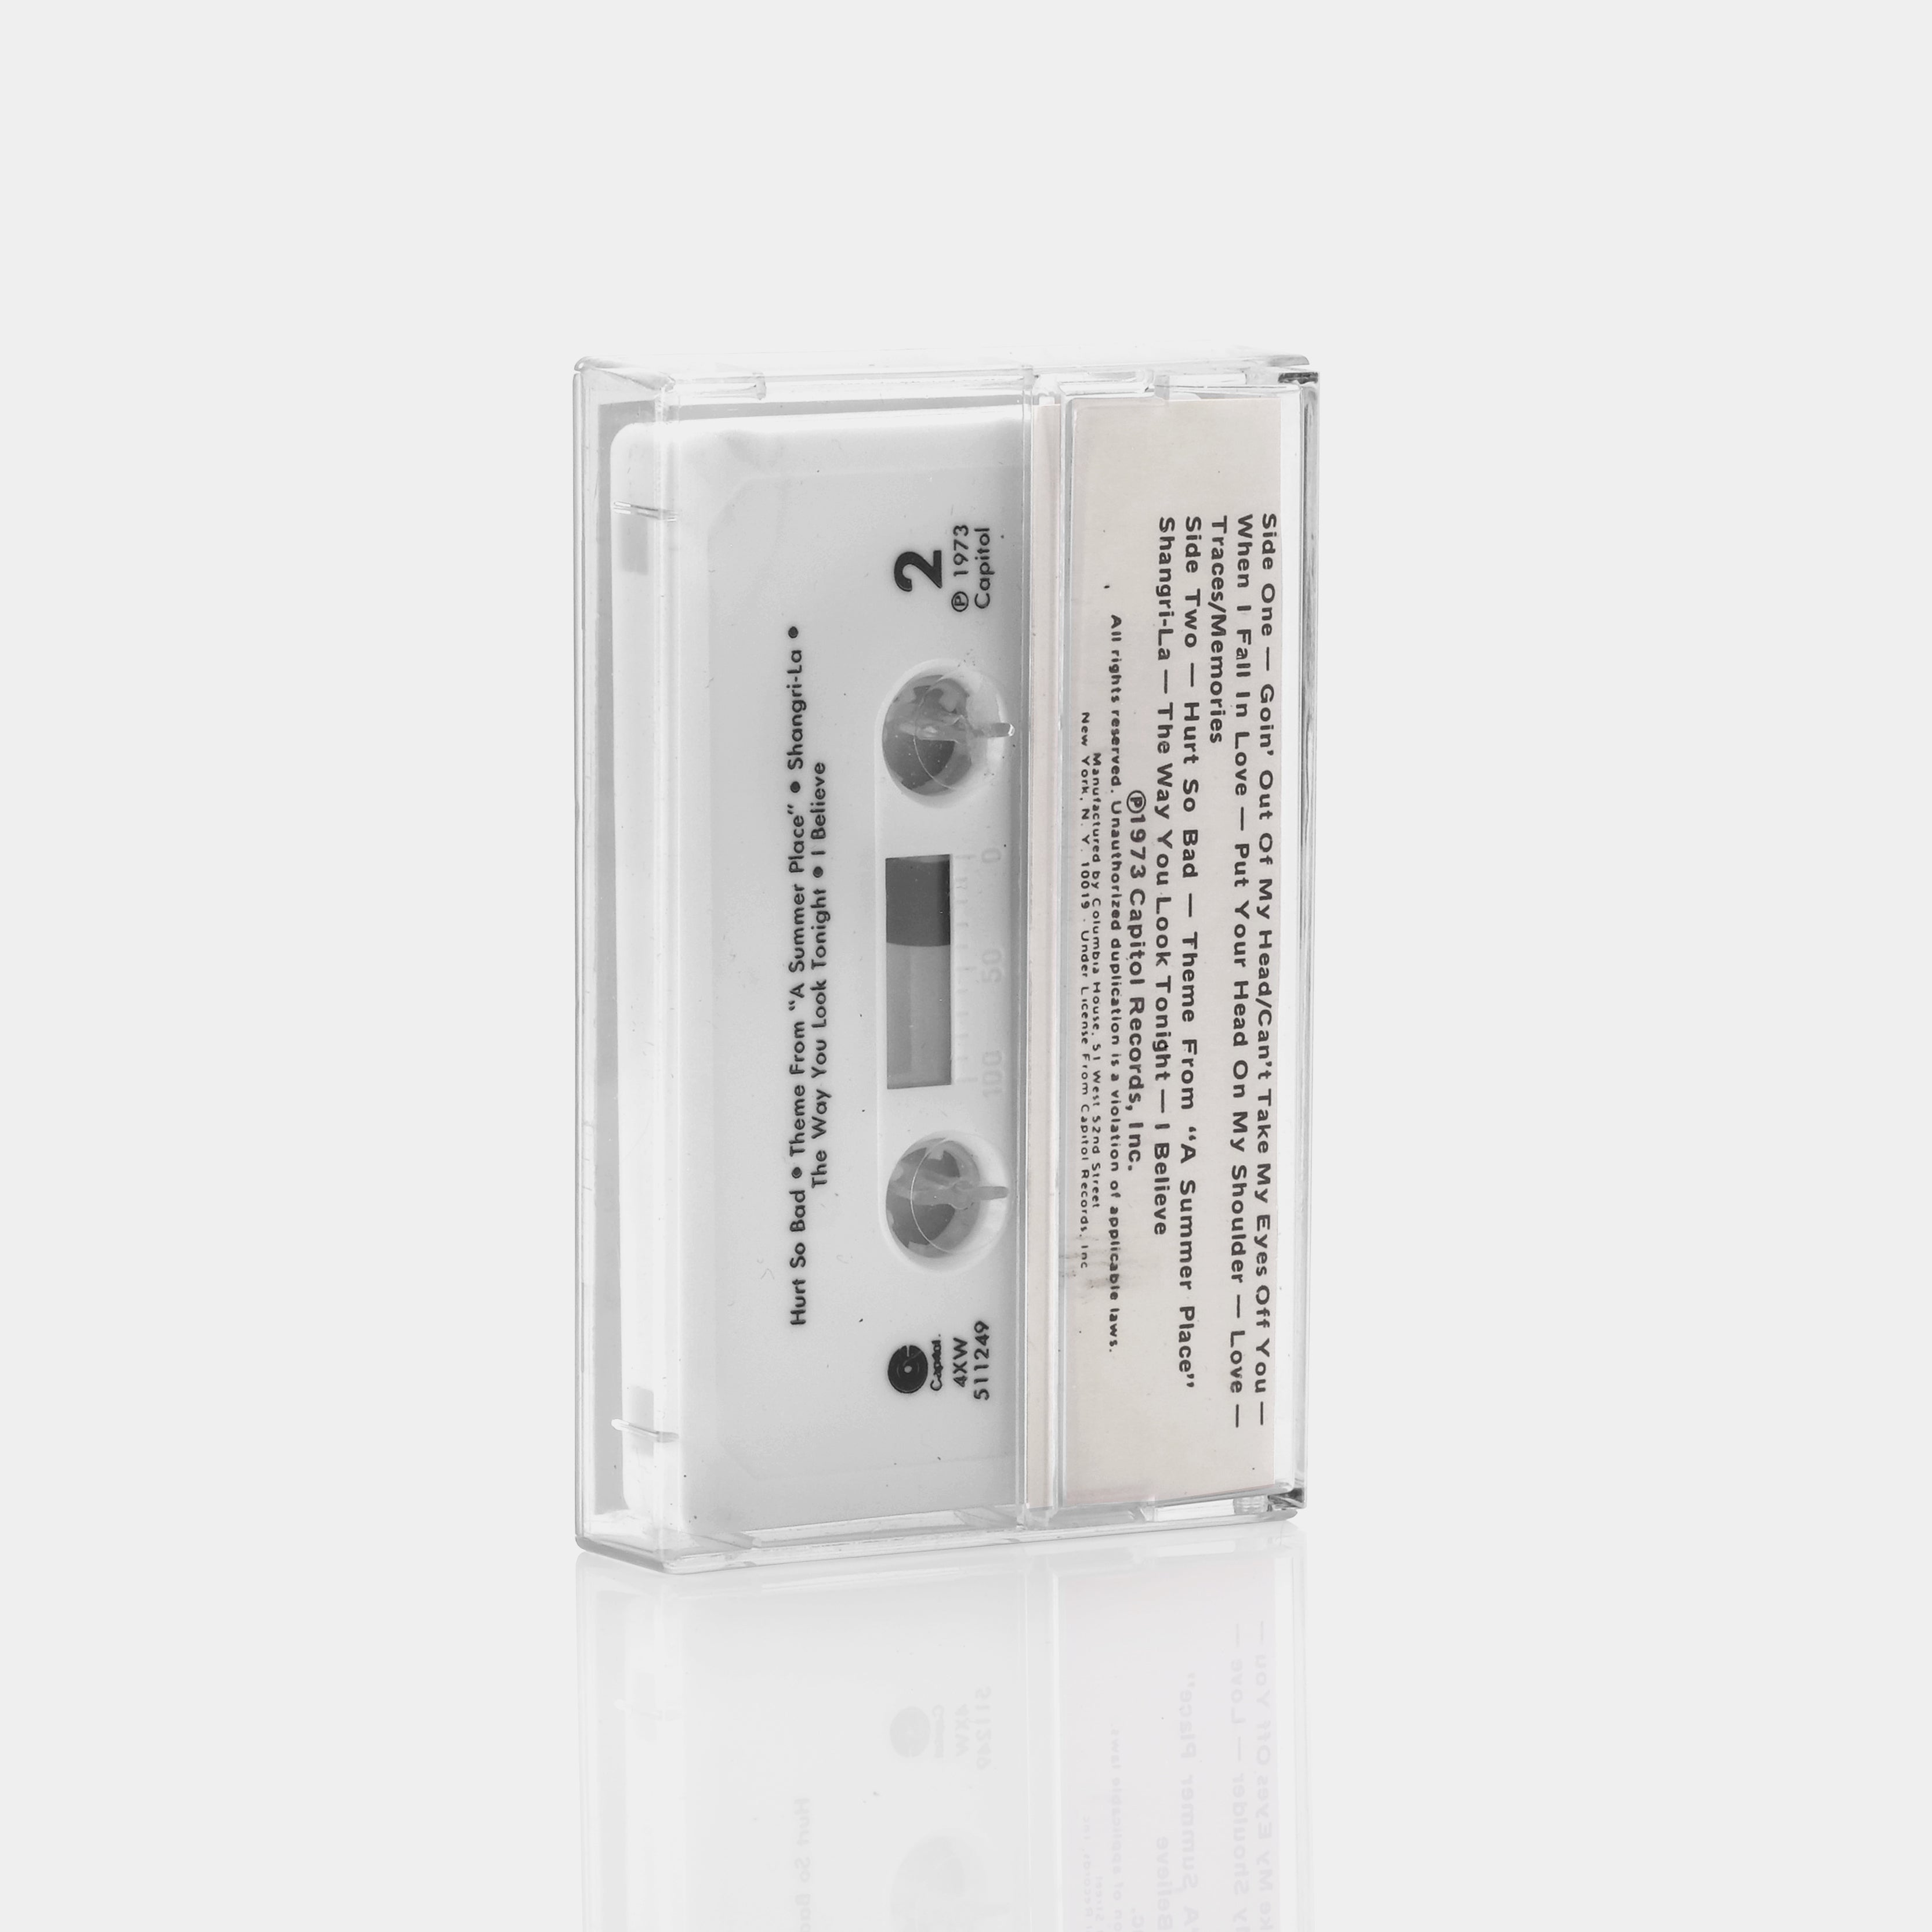 Lettermen - Greatest Hits Cassette Tape